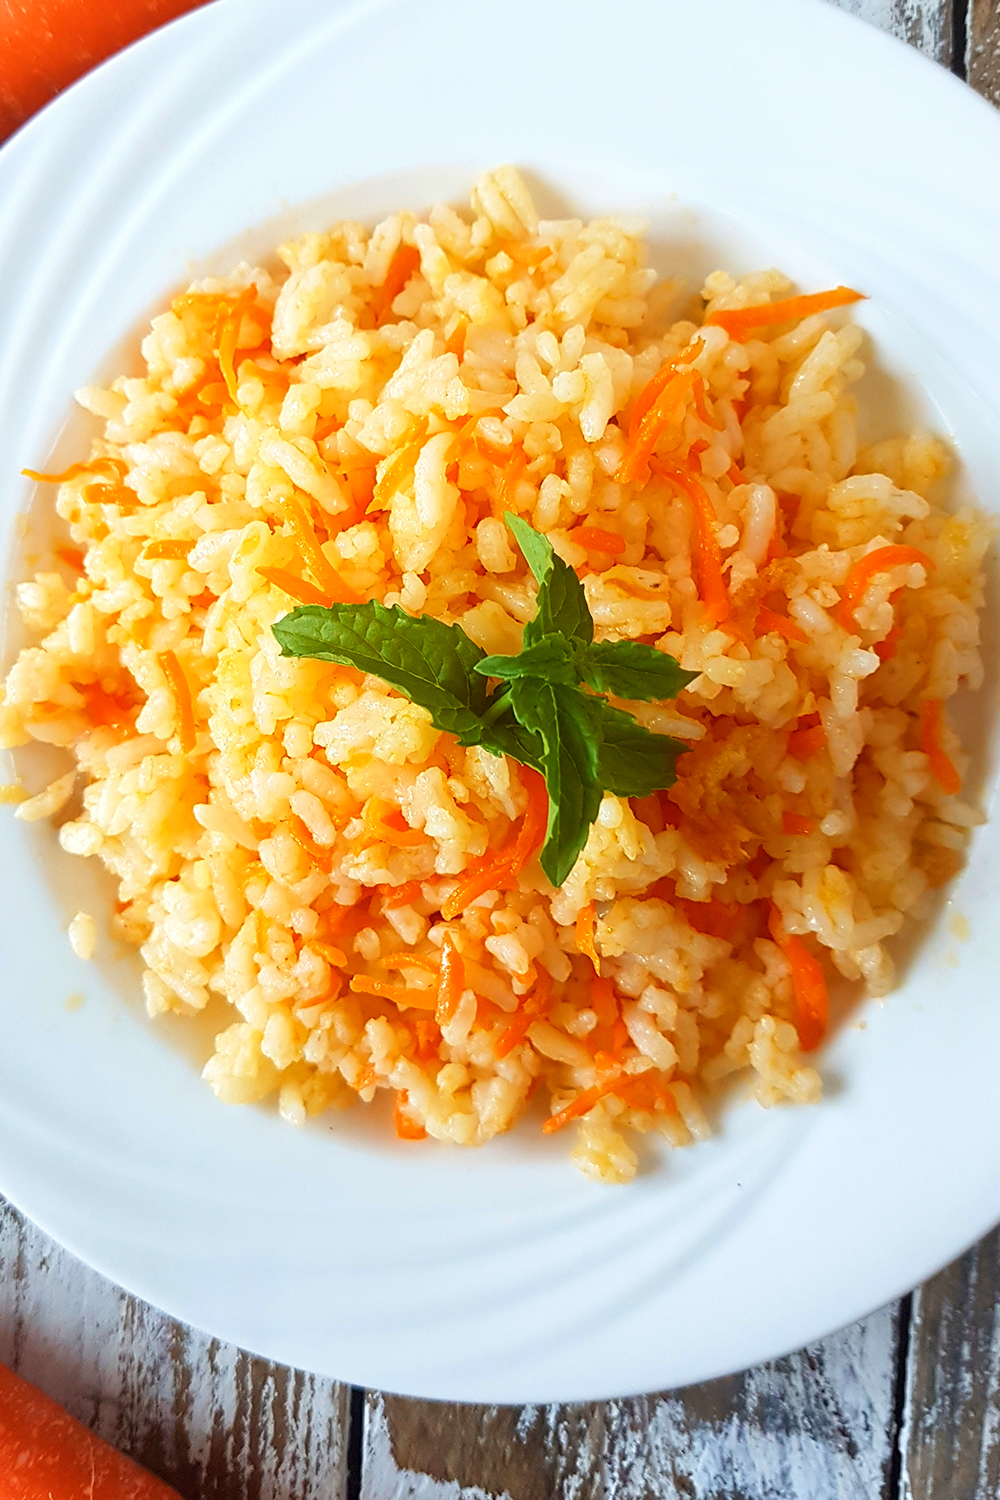 poste no pinterest esta imagem de receita de arroz-com-cenoura